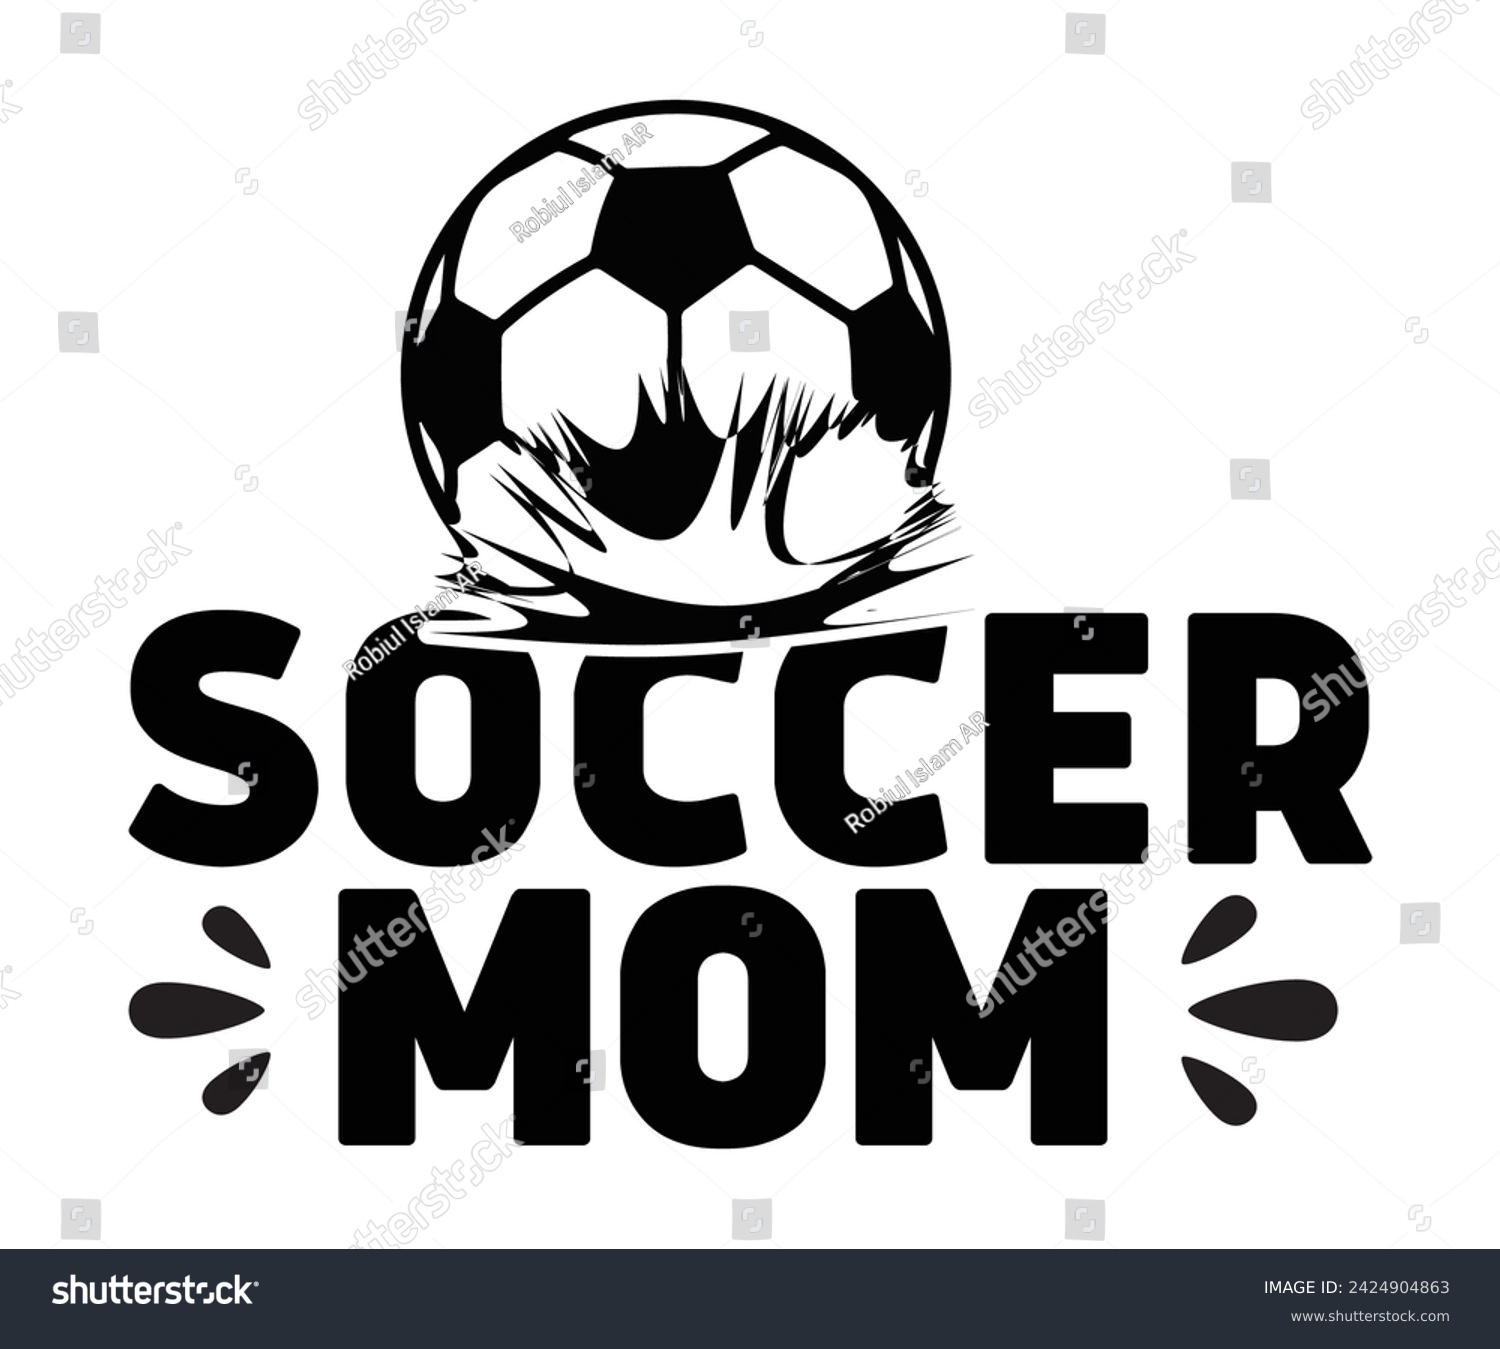 SVG of Soccer Mom Svg,Soccer Day, Soccer Player Shirt, Gift For Soccer,  Football, Sport Design Svg,Soccer Cut File,Soccer Ball, Soccer t-Shirt Design, European Football,  svg